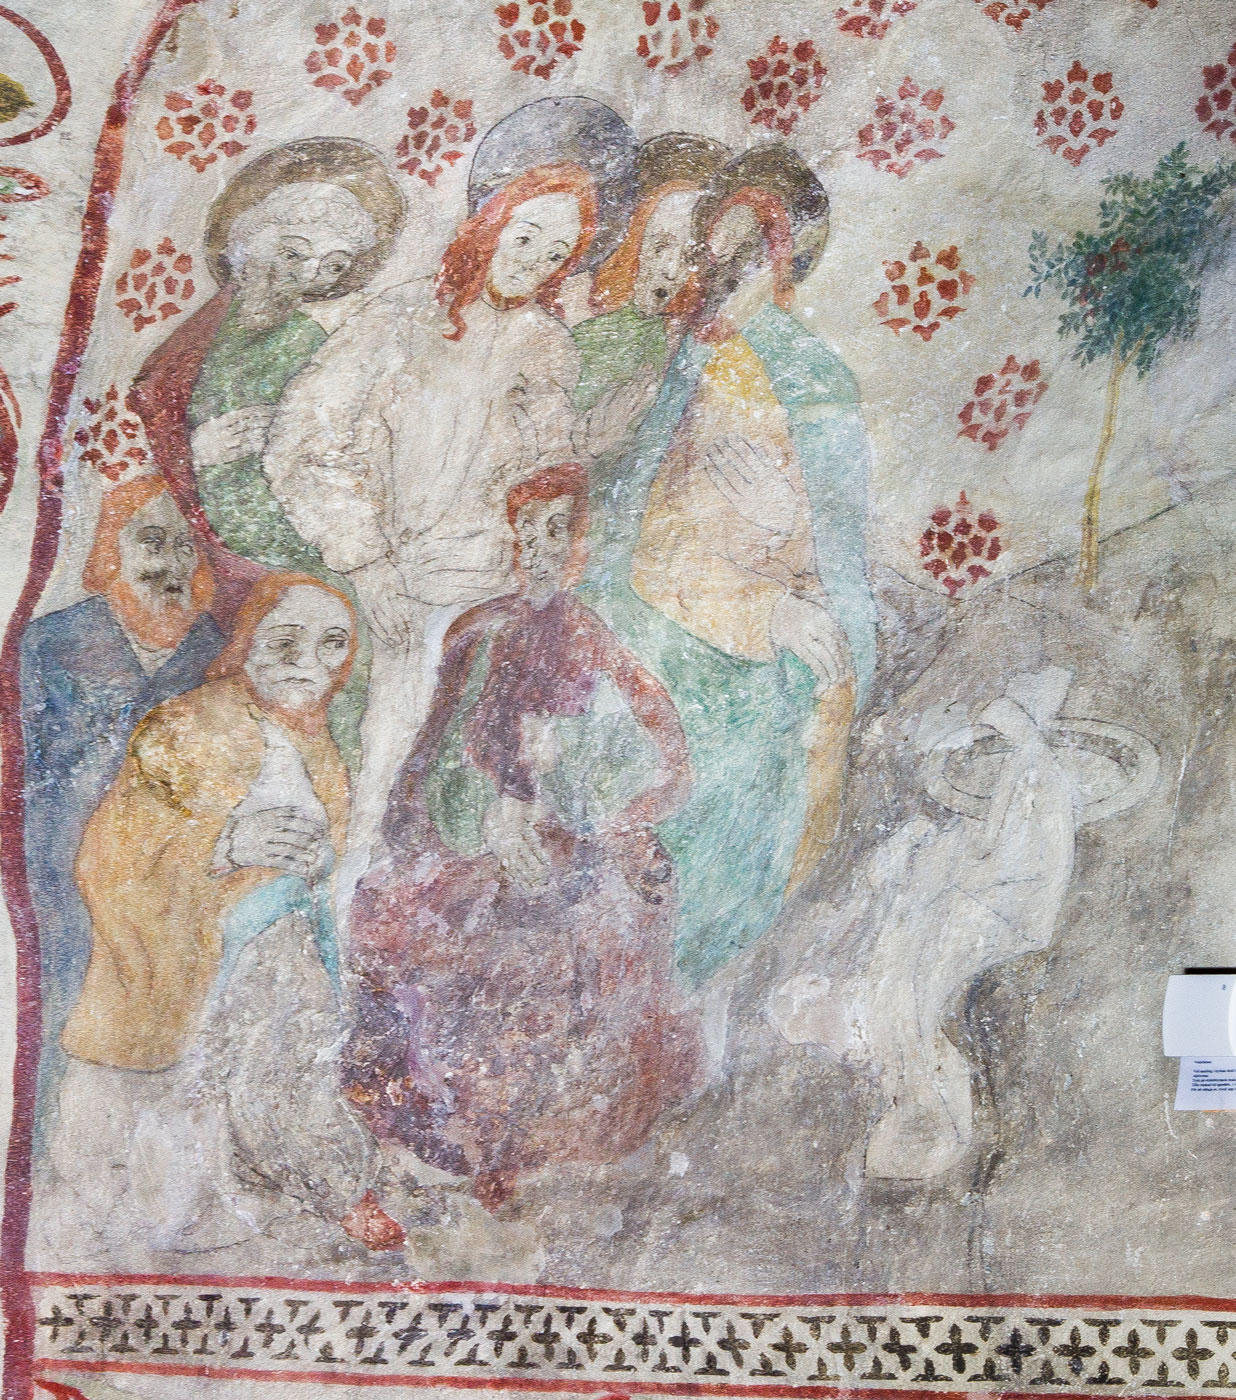 Jesus tar avsked av sina lärjungar och beger sig till Getsemane - Bromma kyrka